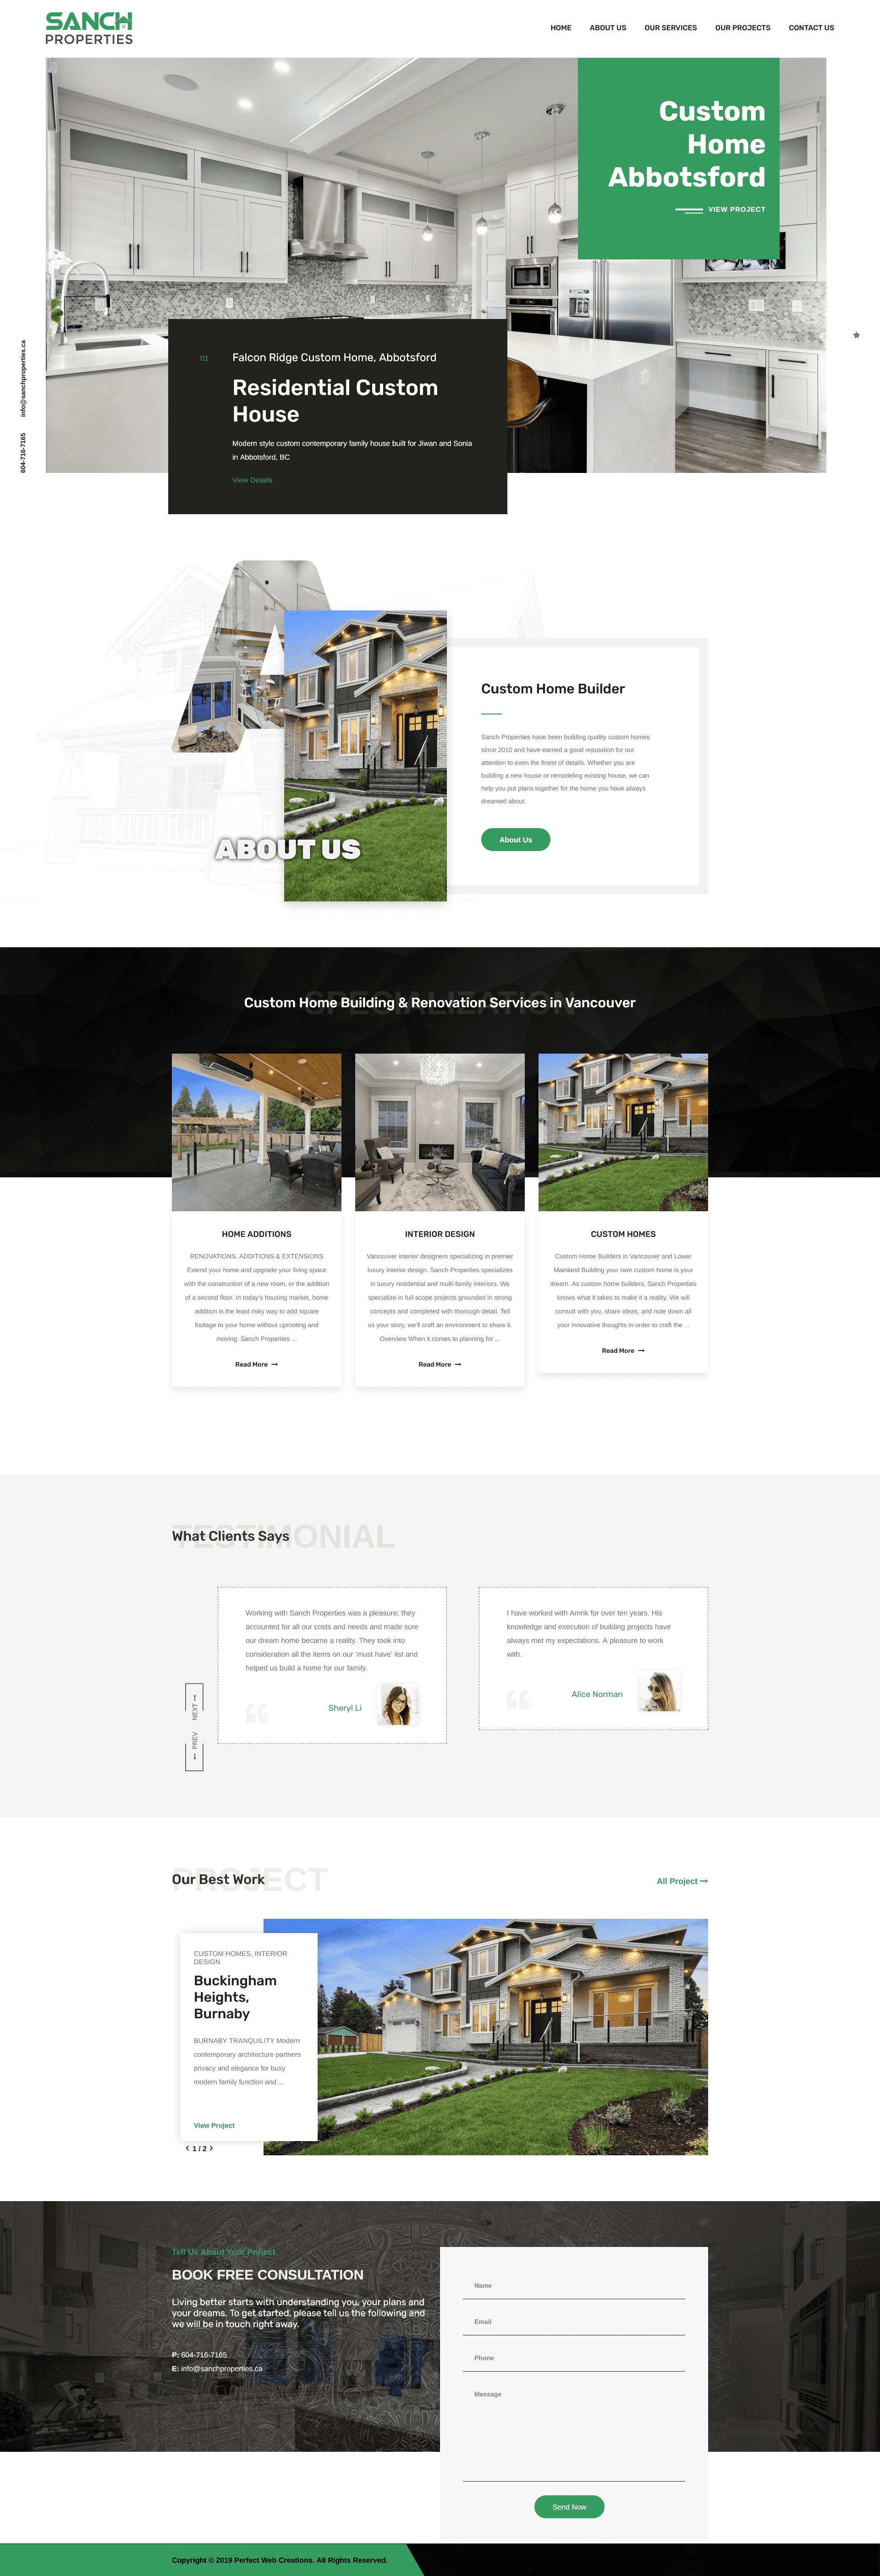 sanch property website design